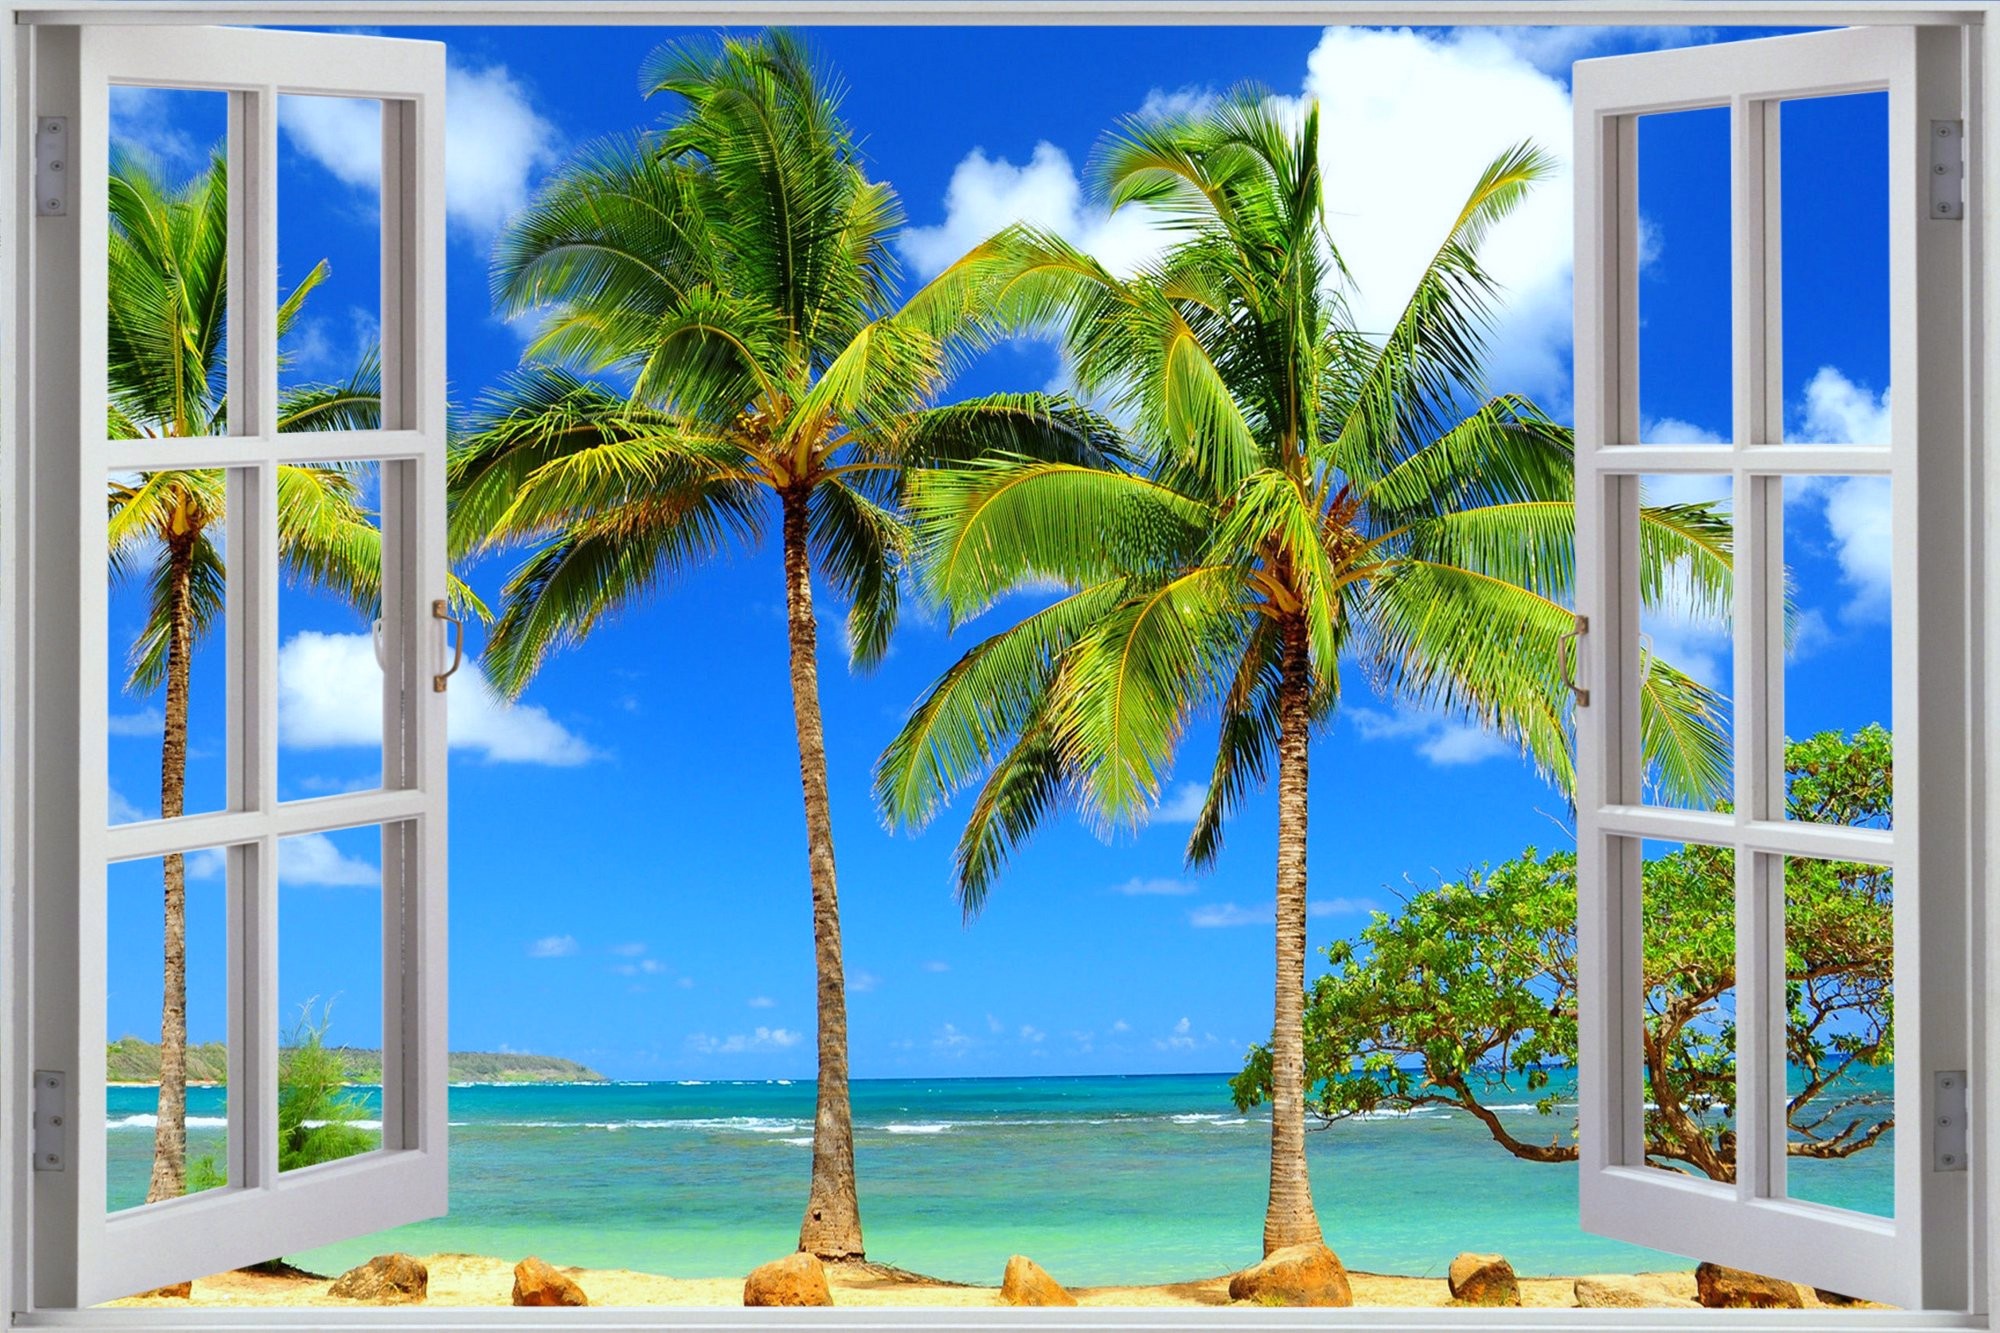 Скачать обои бесплатно Пляж, Пальмы, Океан, Окно, Тропический, Сделано Человеком картинка на рабочий стол ПК